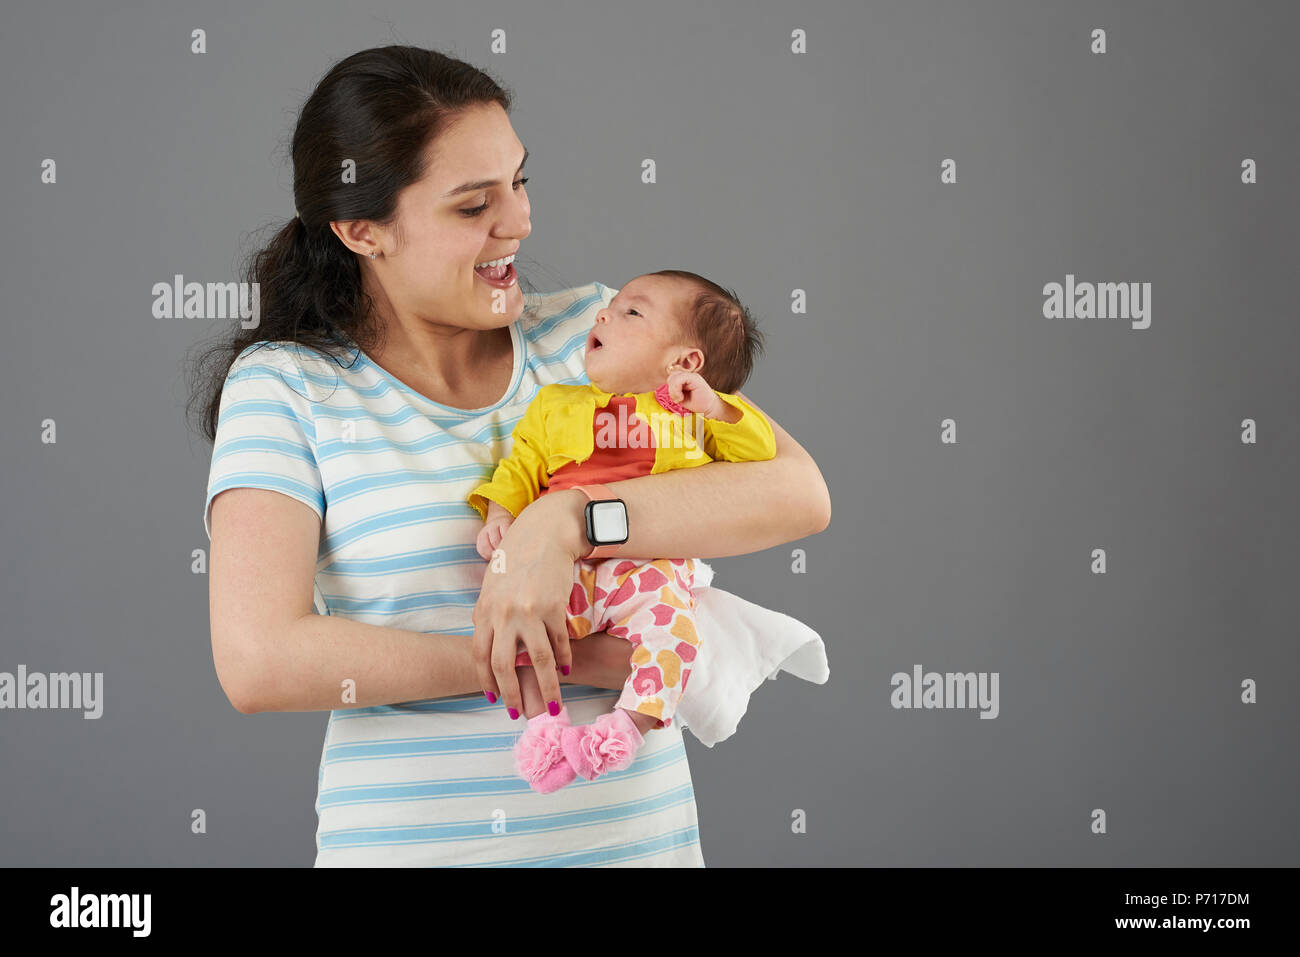 Lachende junge Hispanic Mutter mit Baby girl portrait auf grauem Hintergrund Stockfoto